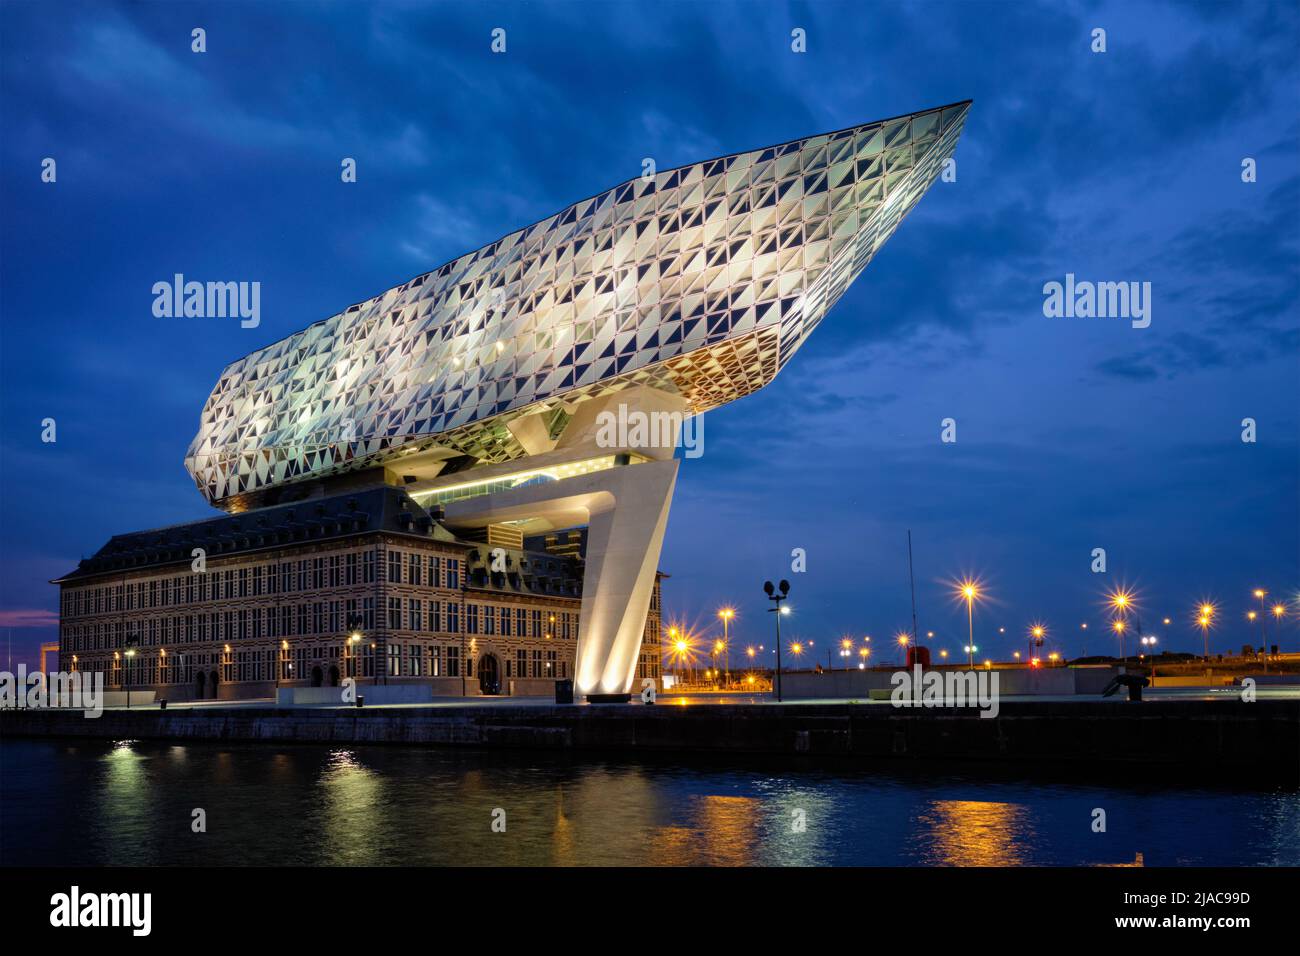 Casa autorità portuale (Porthuis) progettato dai famosi architetti Zaha Hadid. Anversa, Belgio Foto Stock